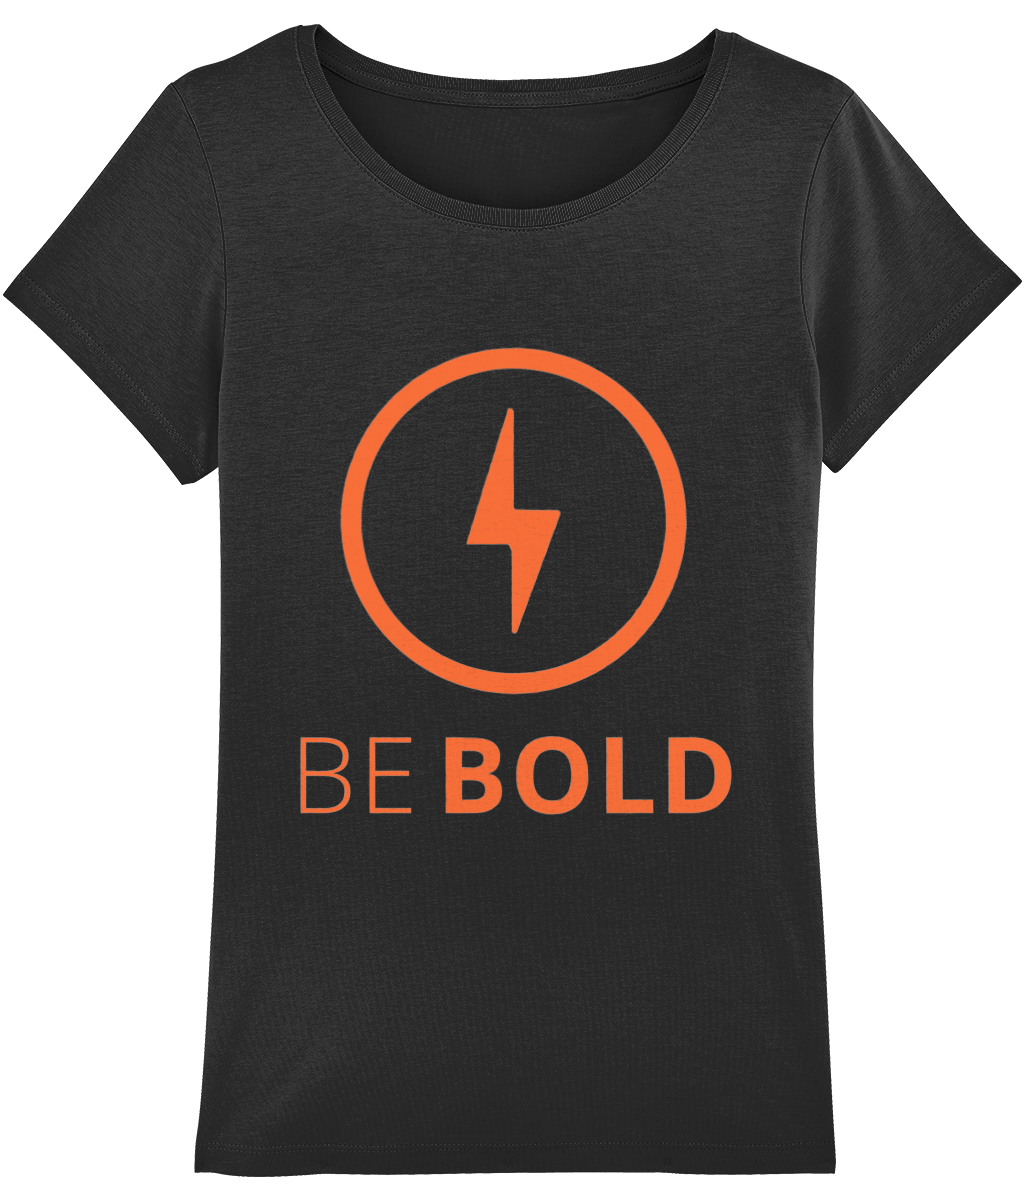 Women's Motivational t-shirt Be Bold